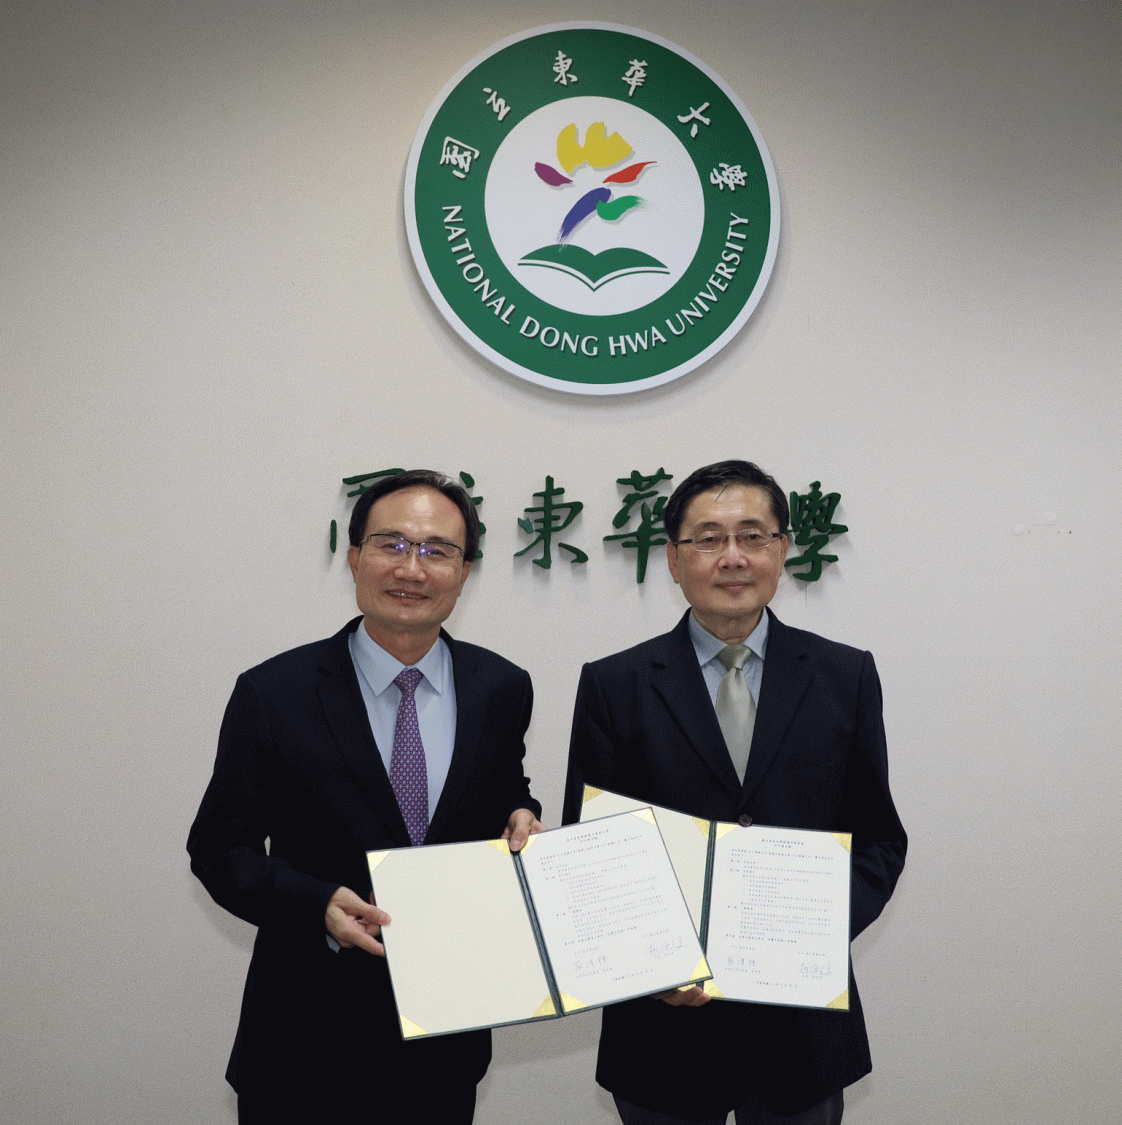 海洋委員會與國立東華大學簽署合作備忘錄 攜手共創台灣海洋事務合作